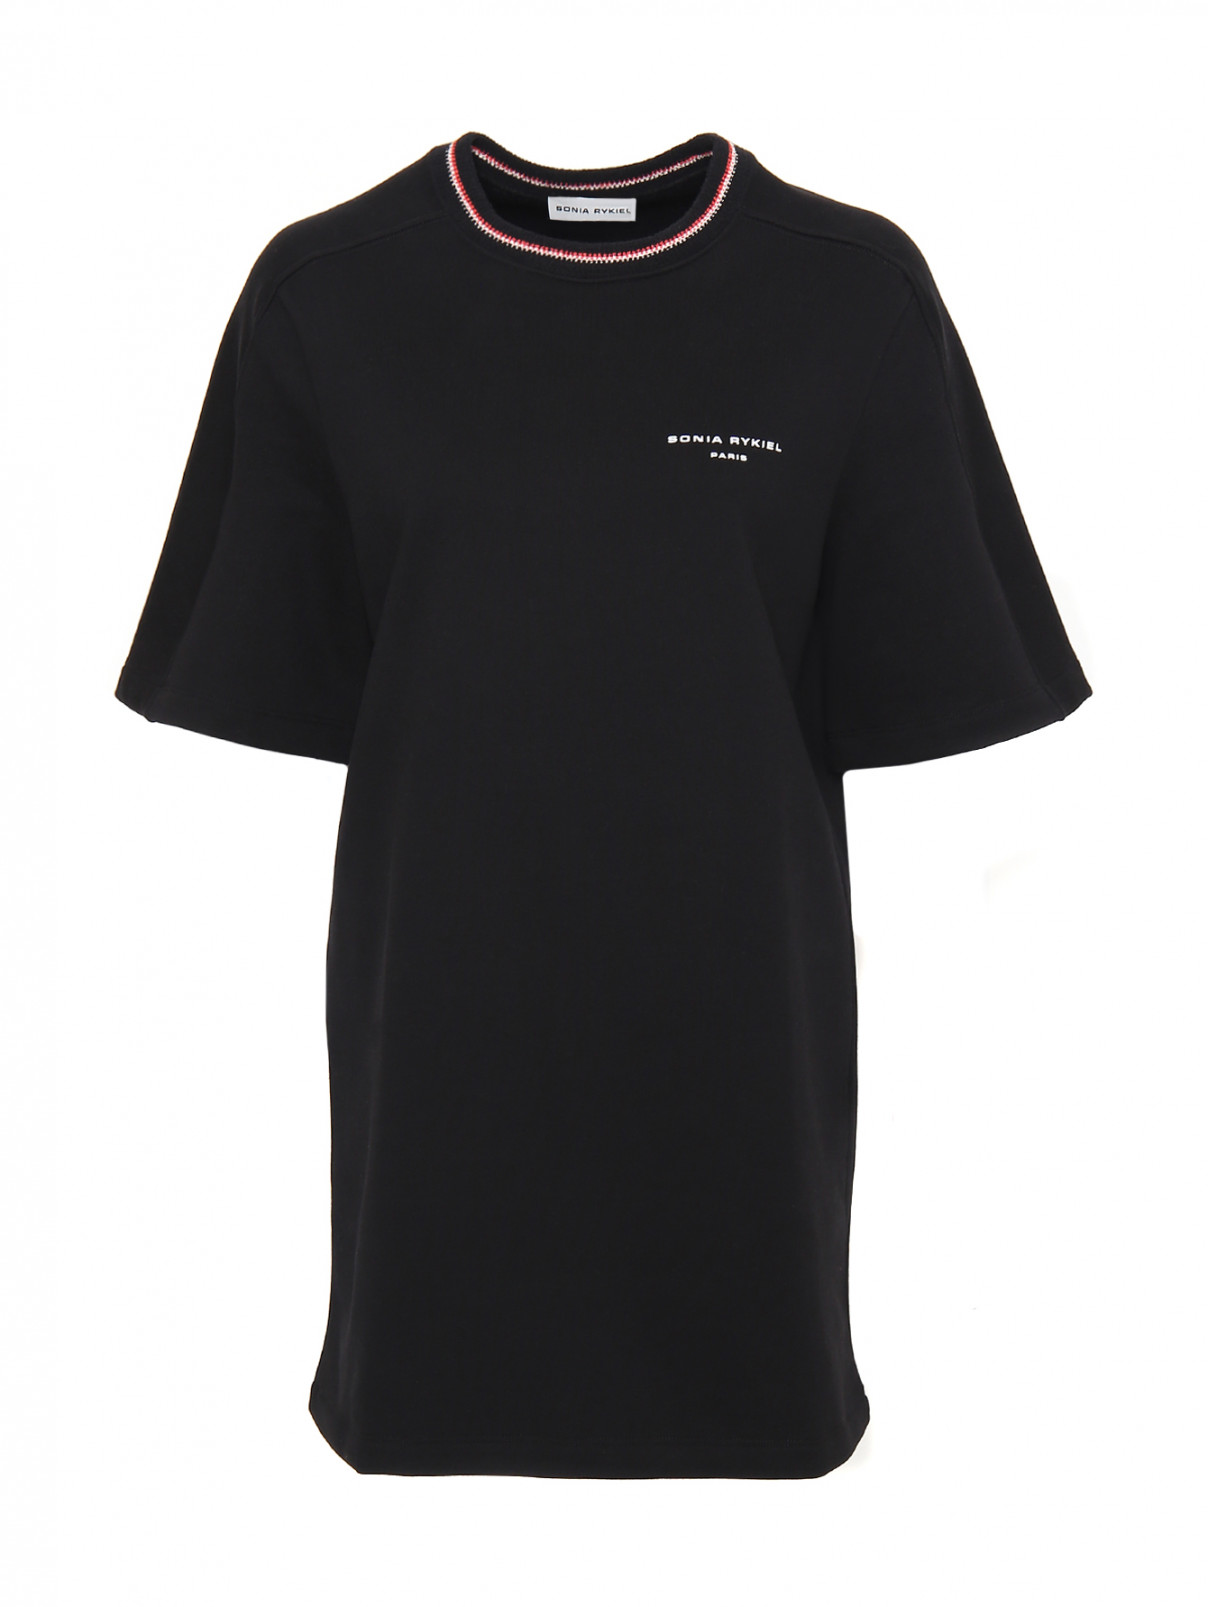 Платье -мини из хлопка с принтом и аппликацией на спине Sonia Rykiel  –  Общий вид  – Цвет:  Черный